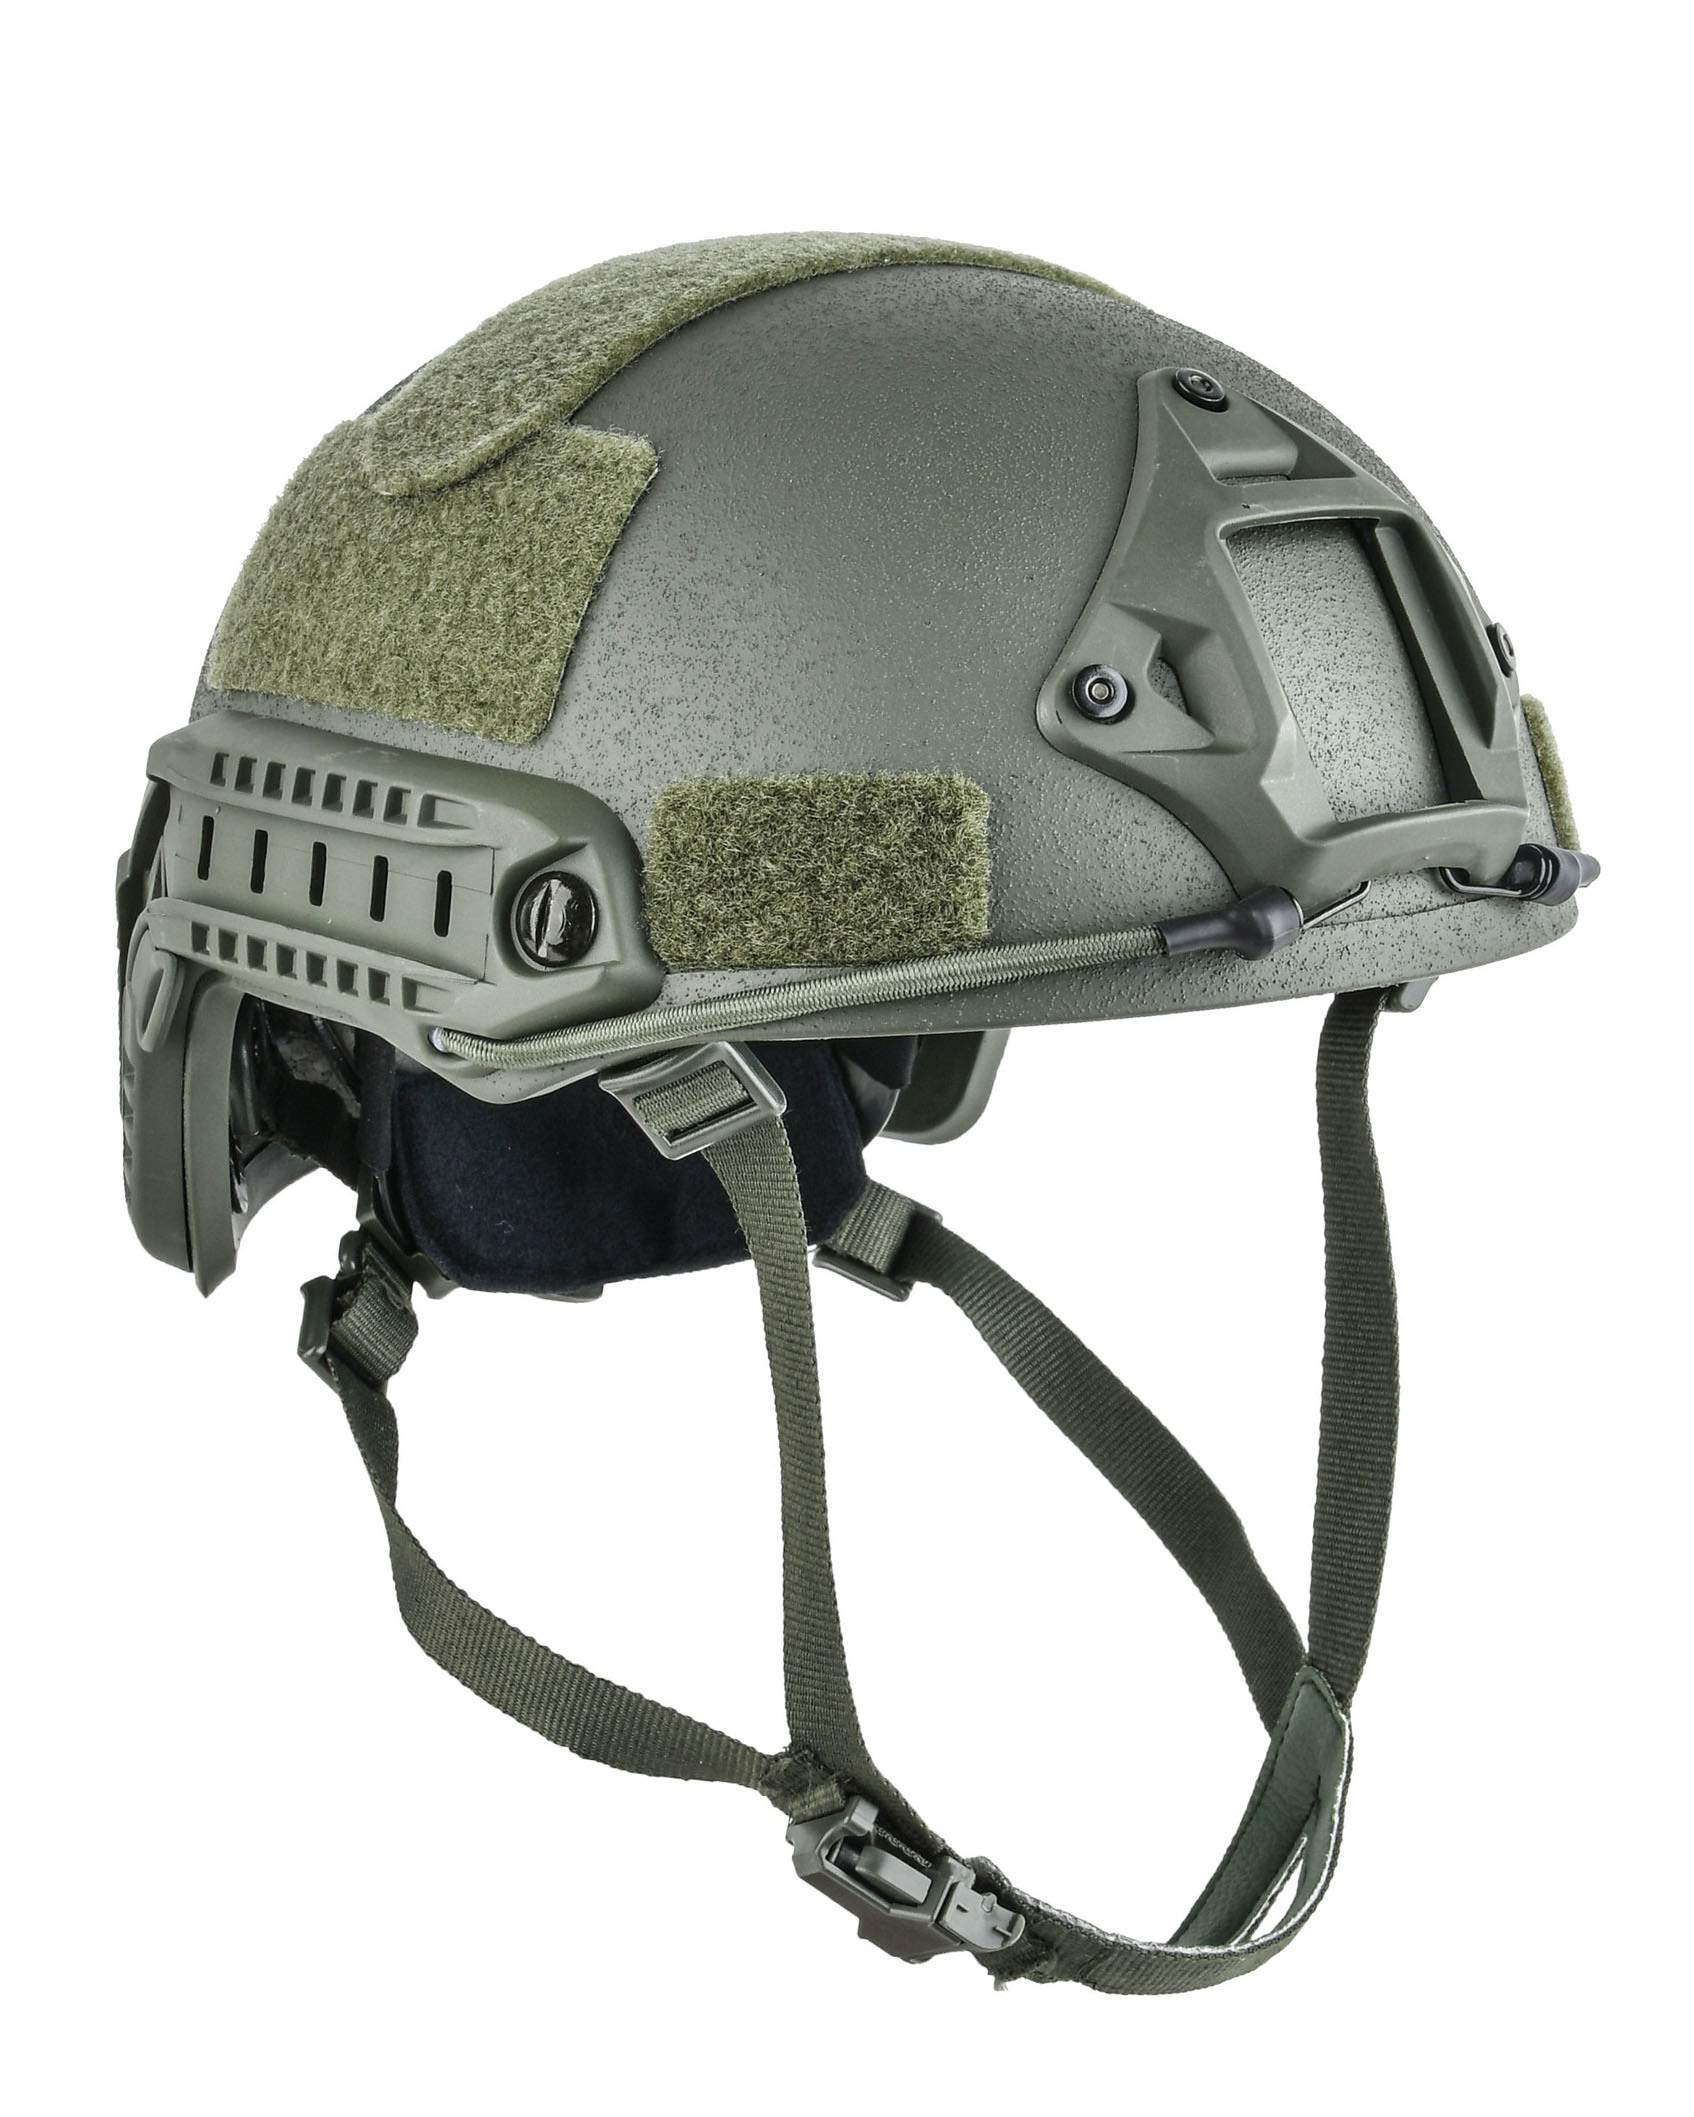 傲骨國軍裝備❱ - FAST 戰術頭盔軍用頭盔軍綠色